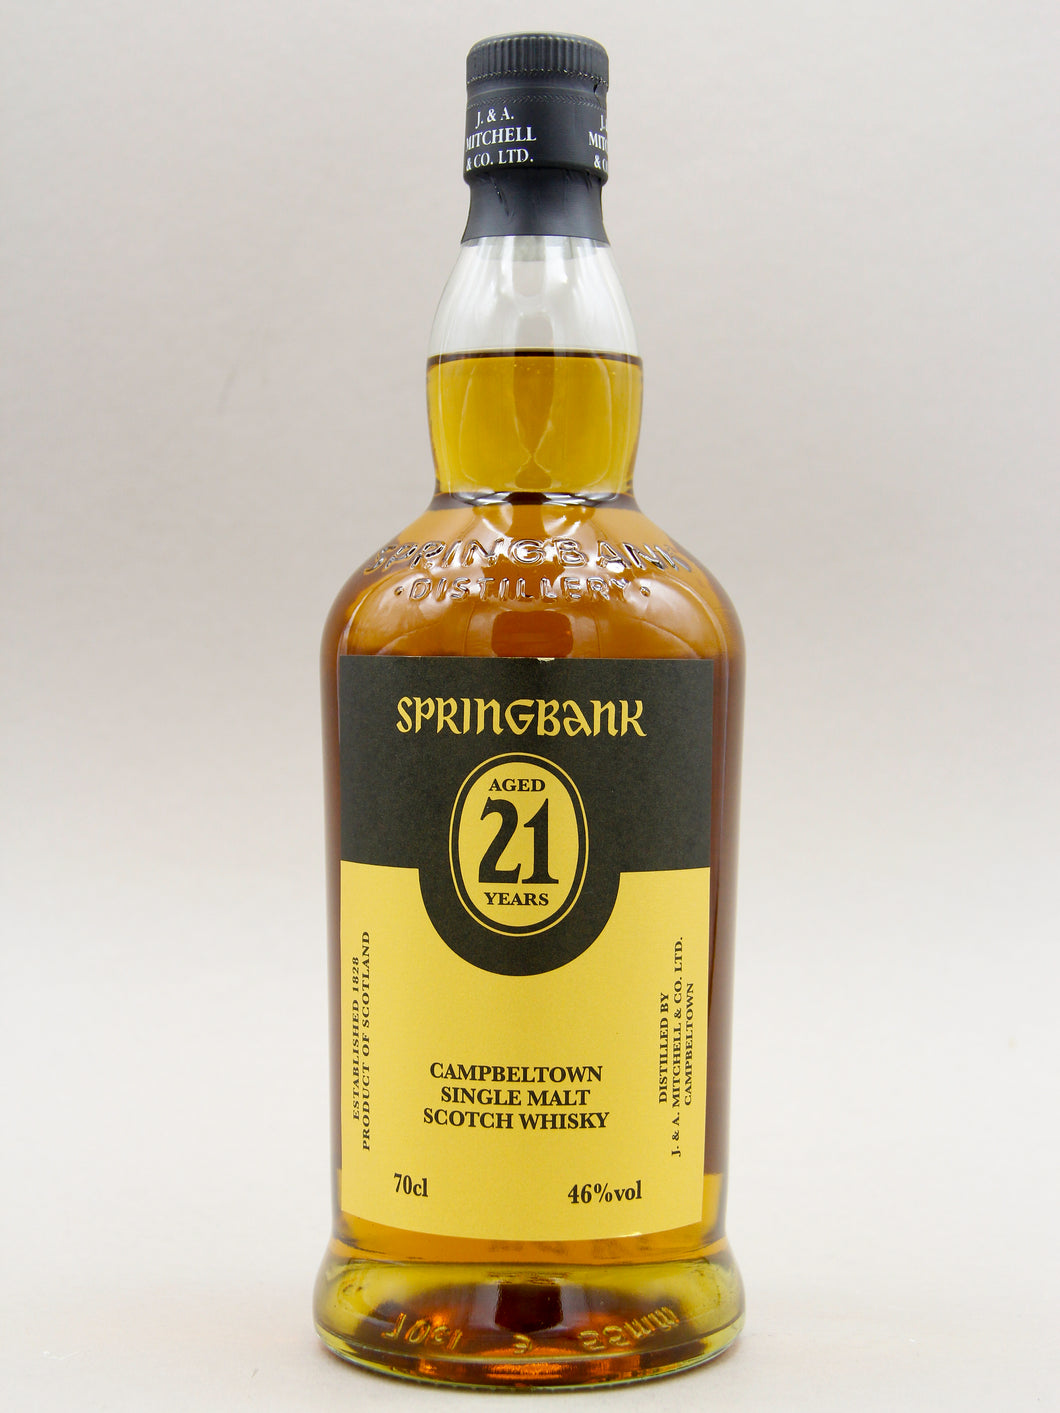 Springbank 21 Years, July 2023, Campbeltown Single Malt Scotch Whisky (46%, 70cl)